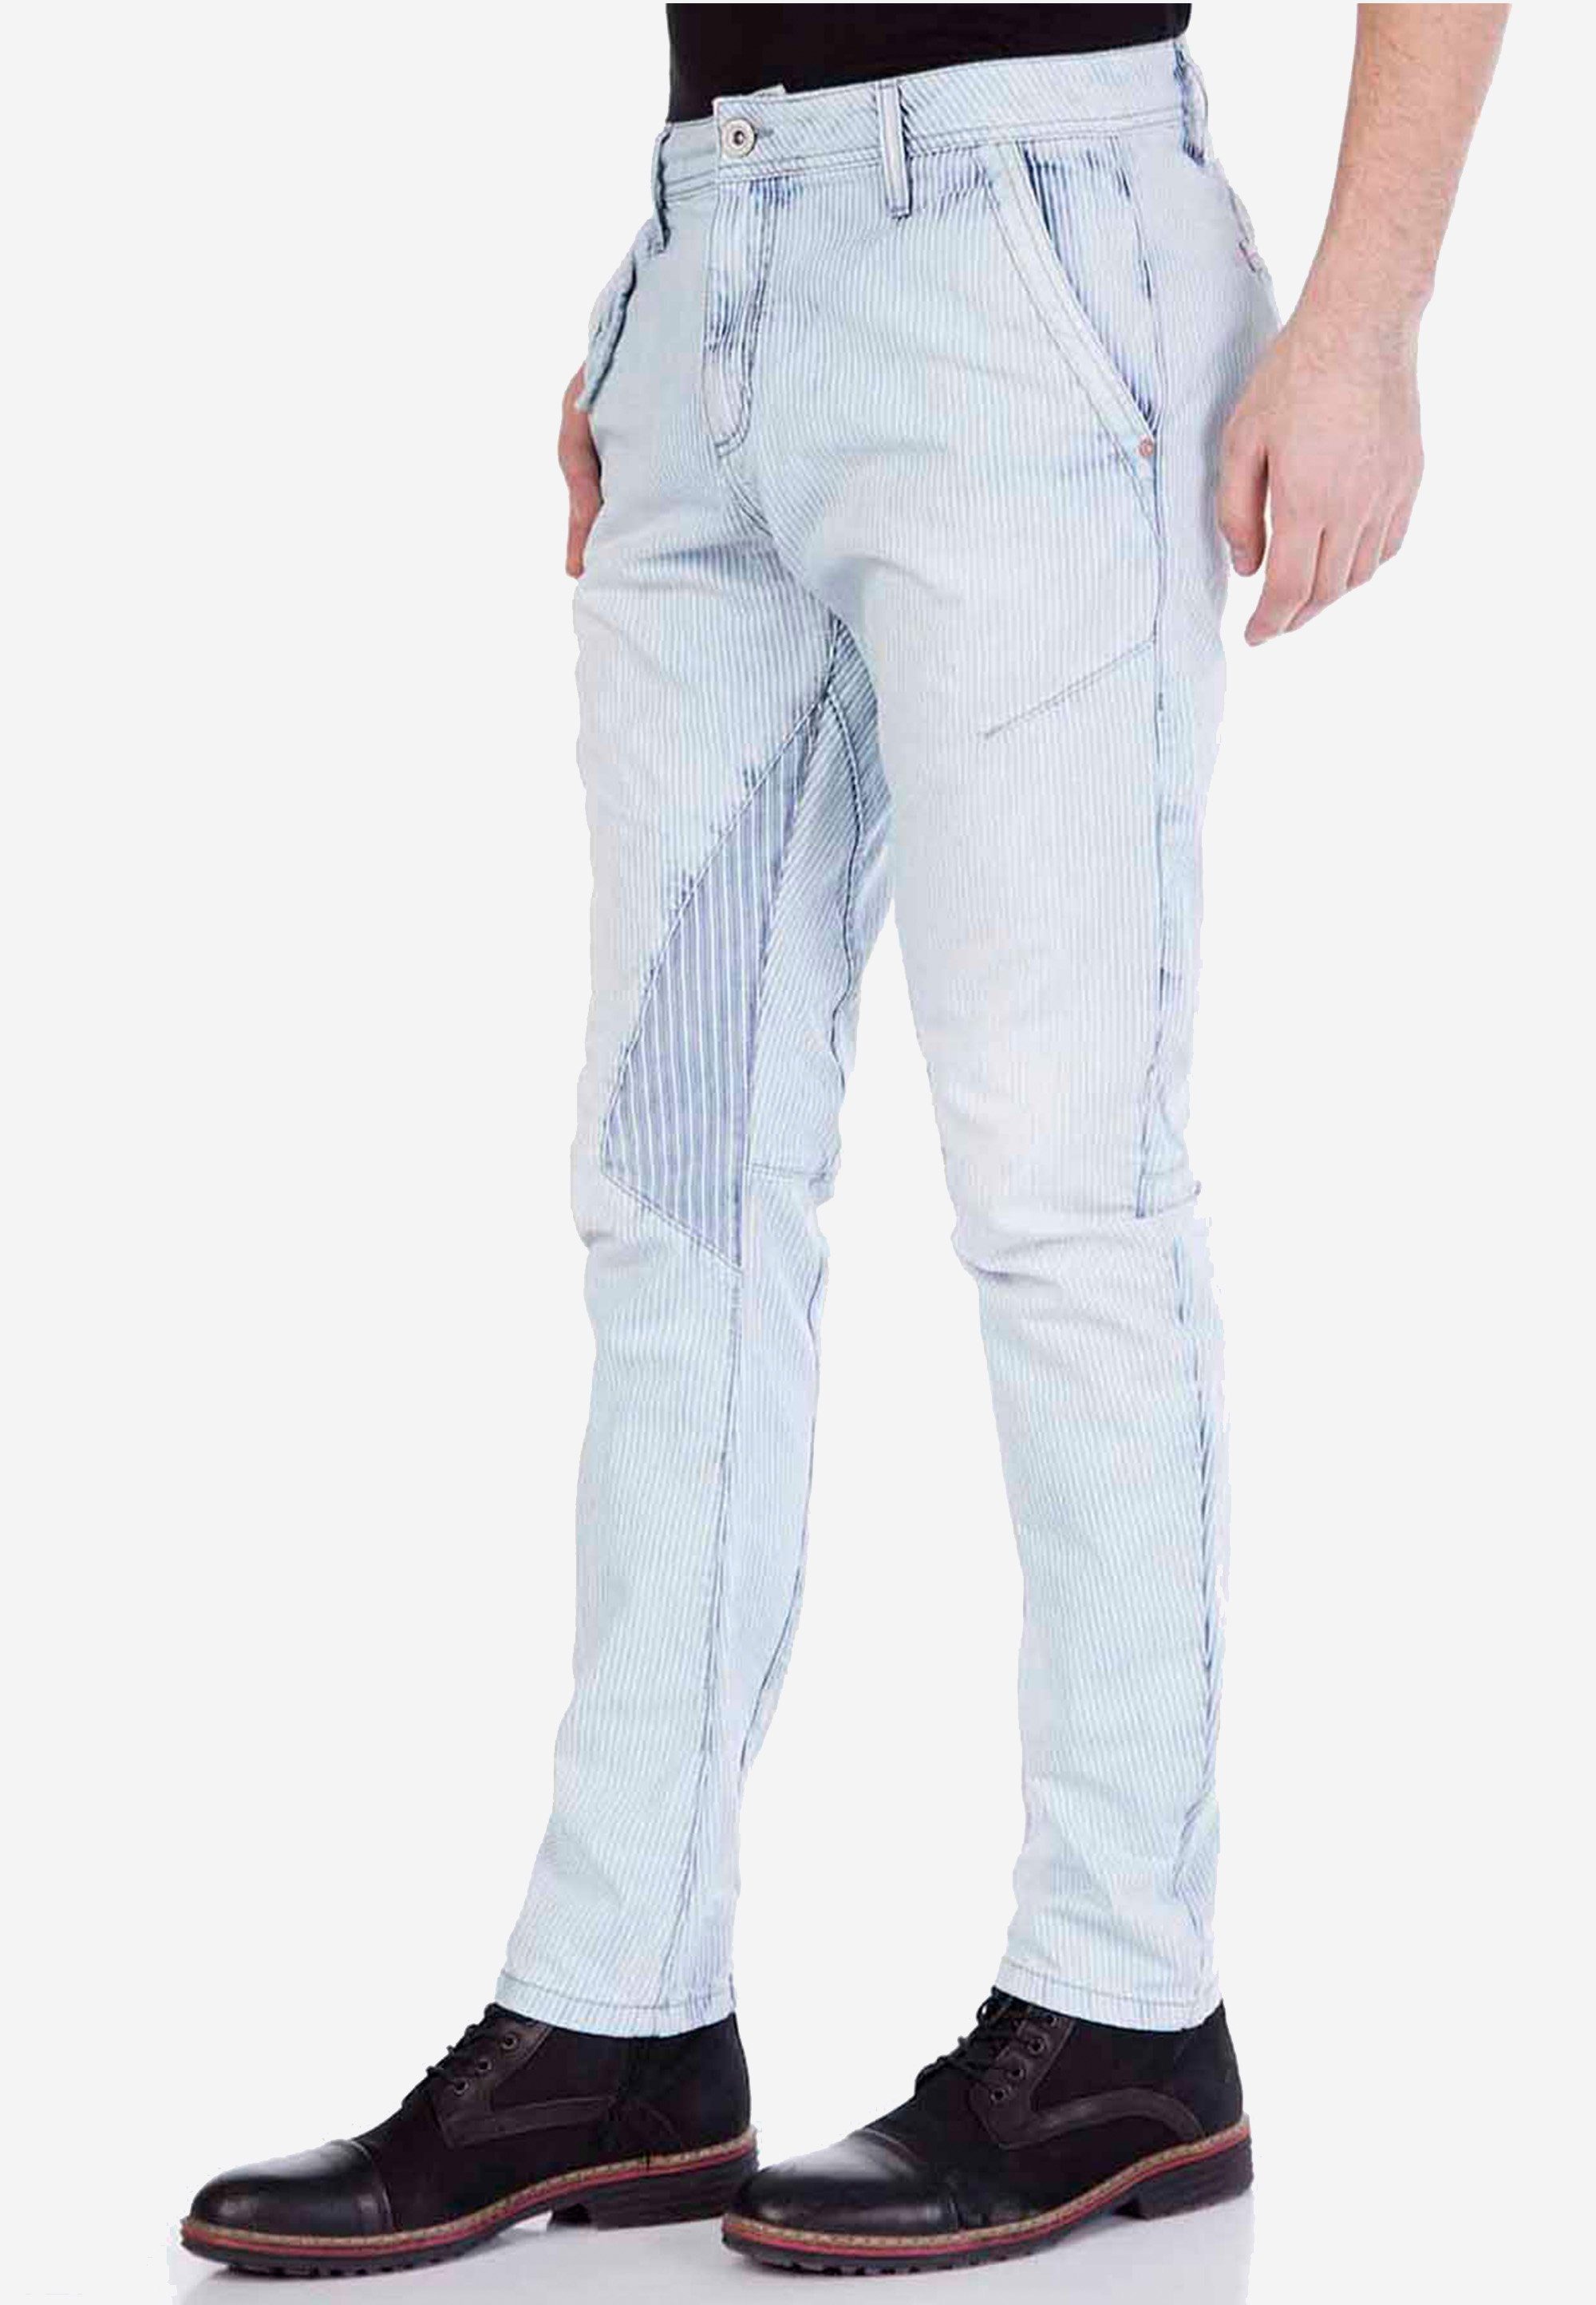 & Slim-fit-Jeans Flicken-Elementen tollen Baxx mit Cipo